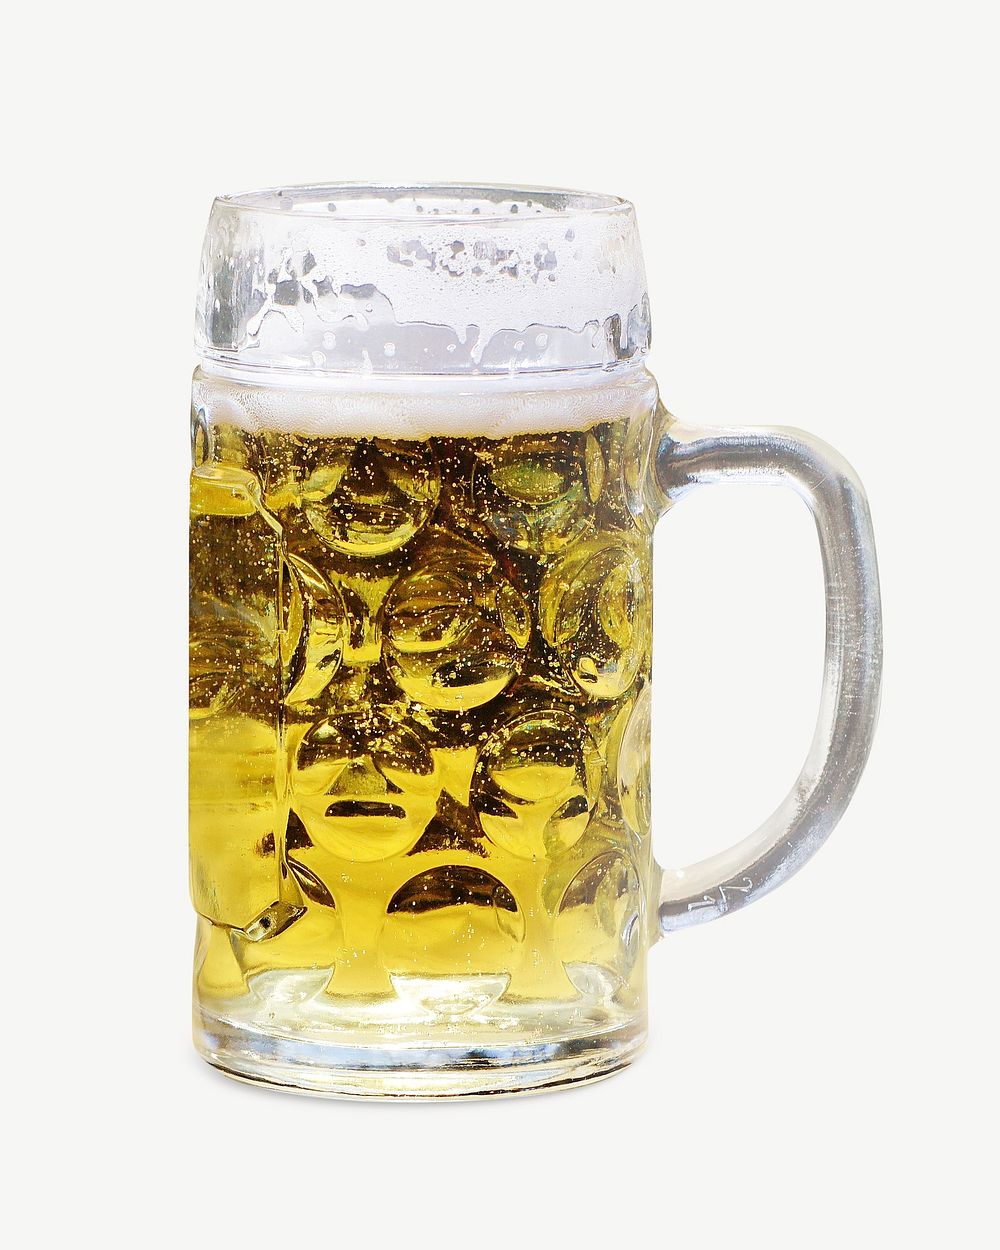 Beer mug collage element psd